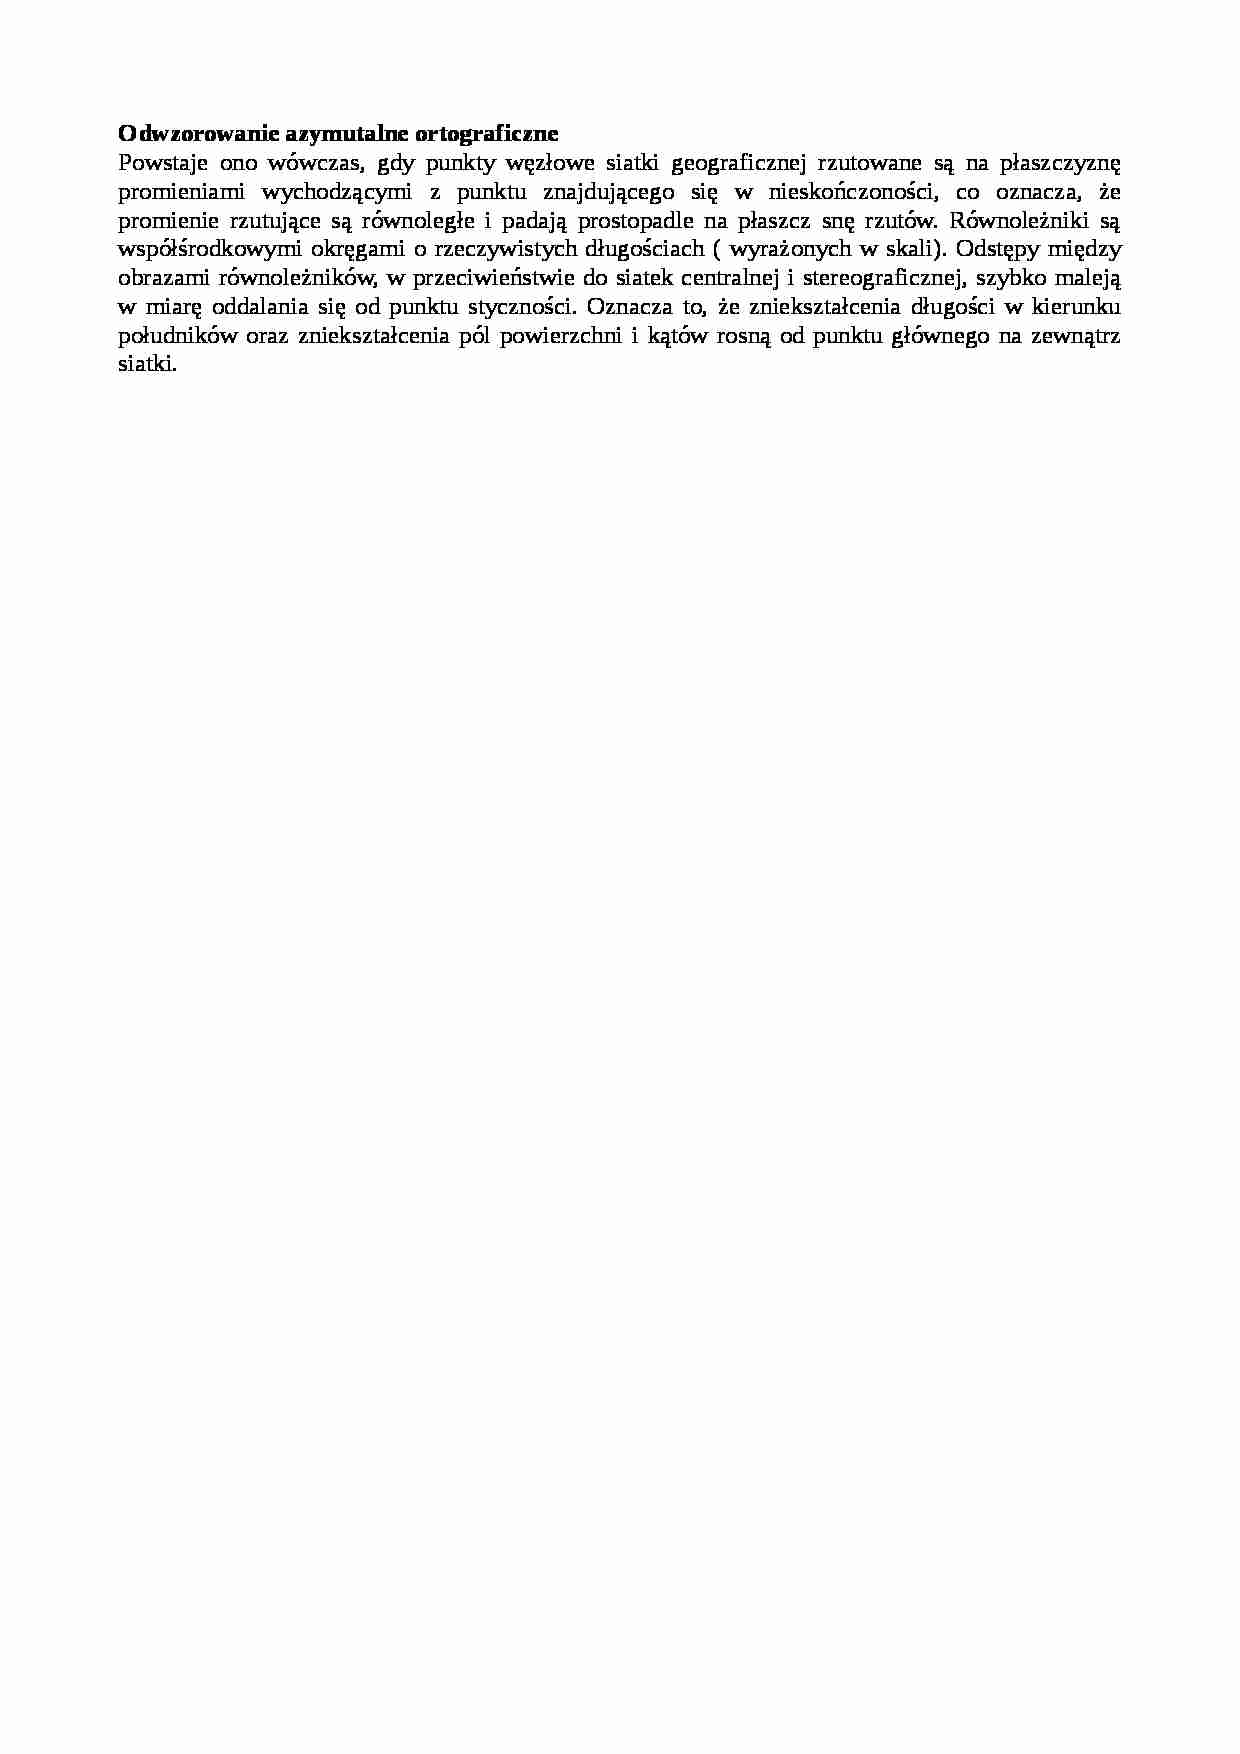 Odwzorowanie azymutalne ortograficzne-opracowanie - strona 1